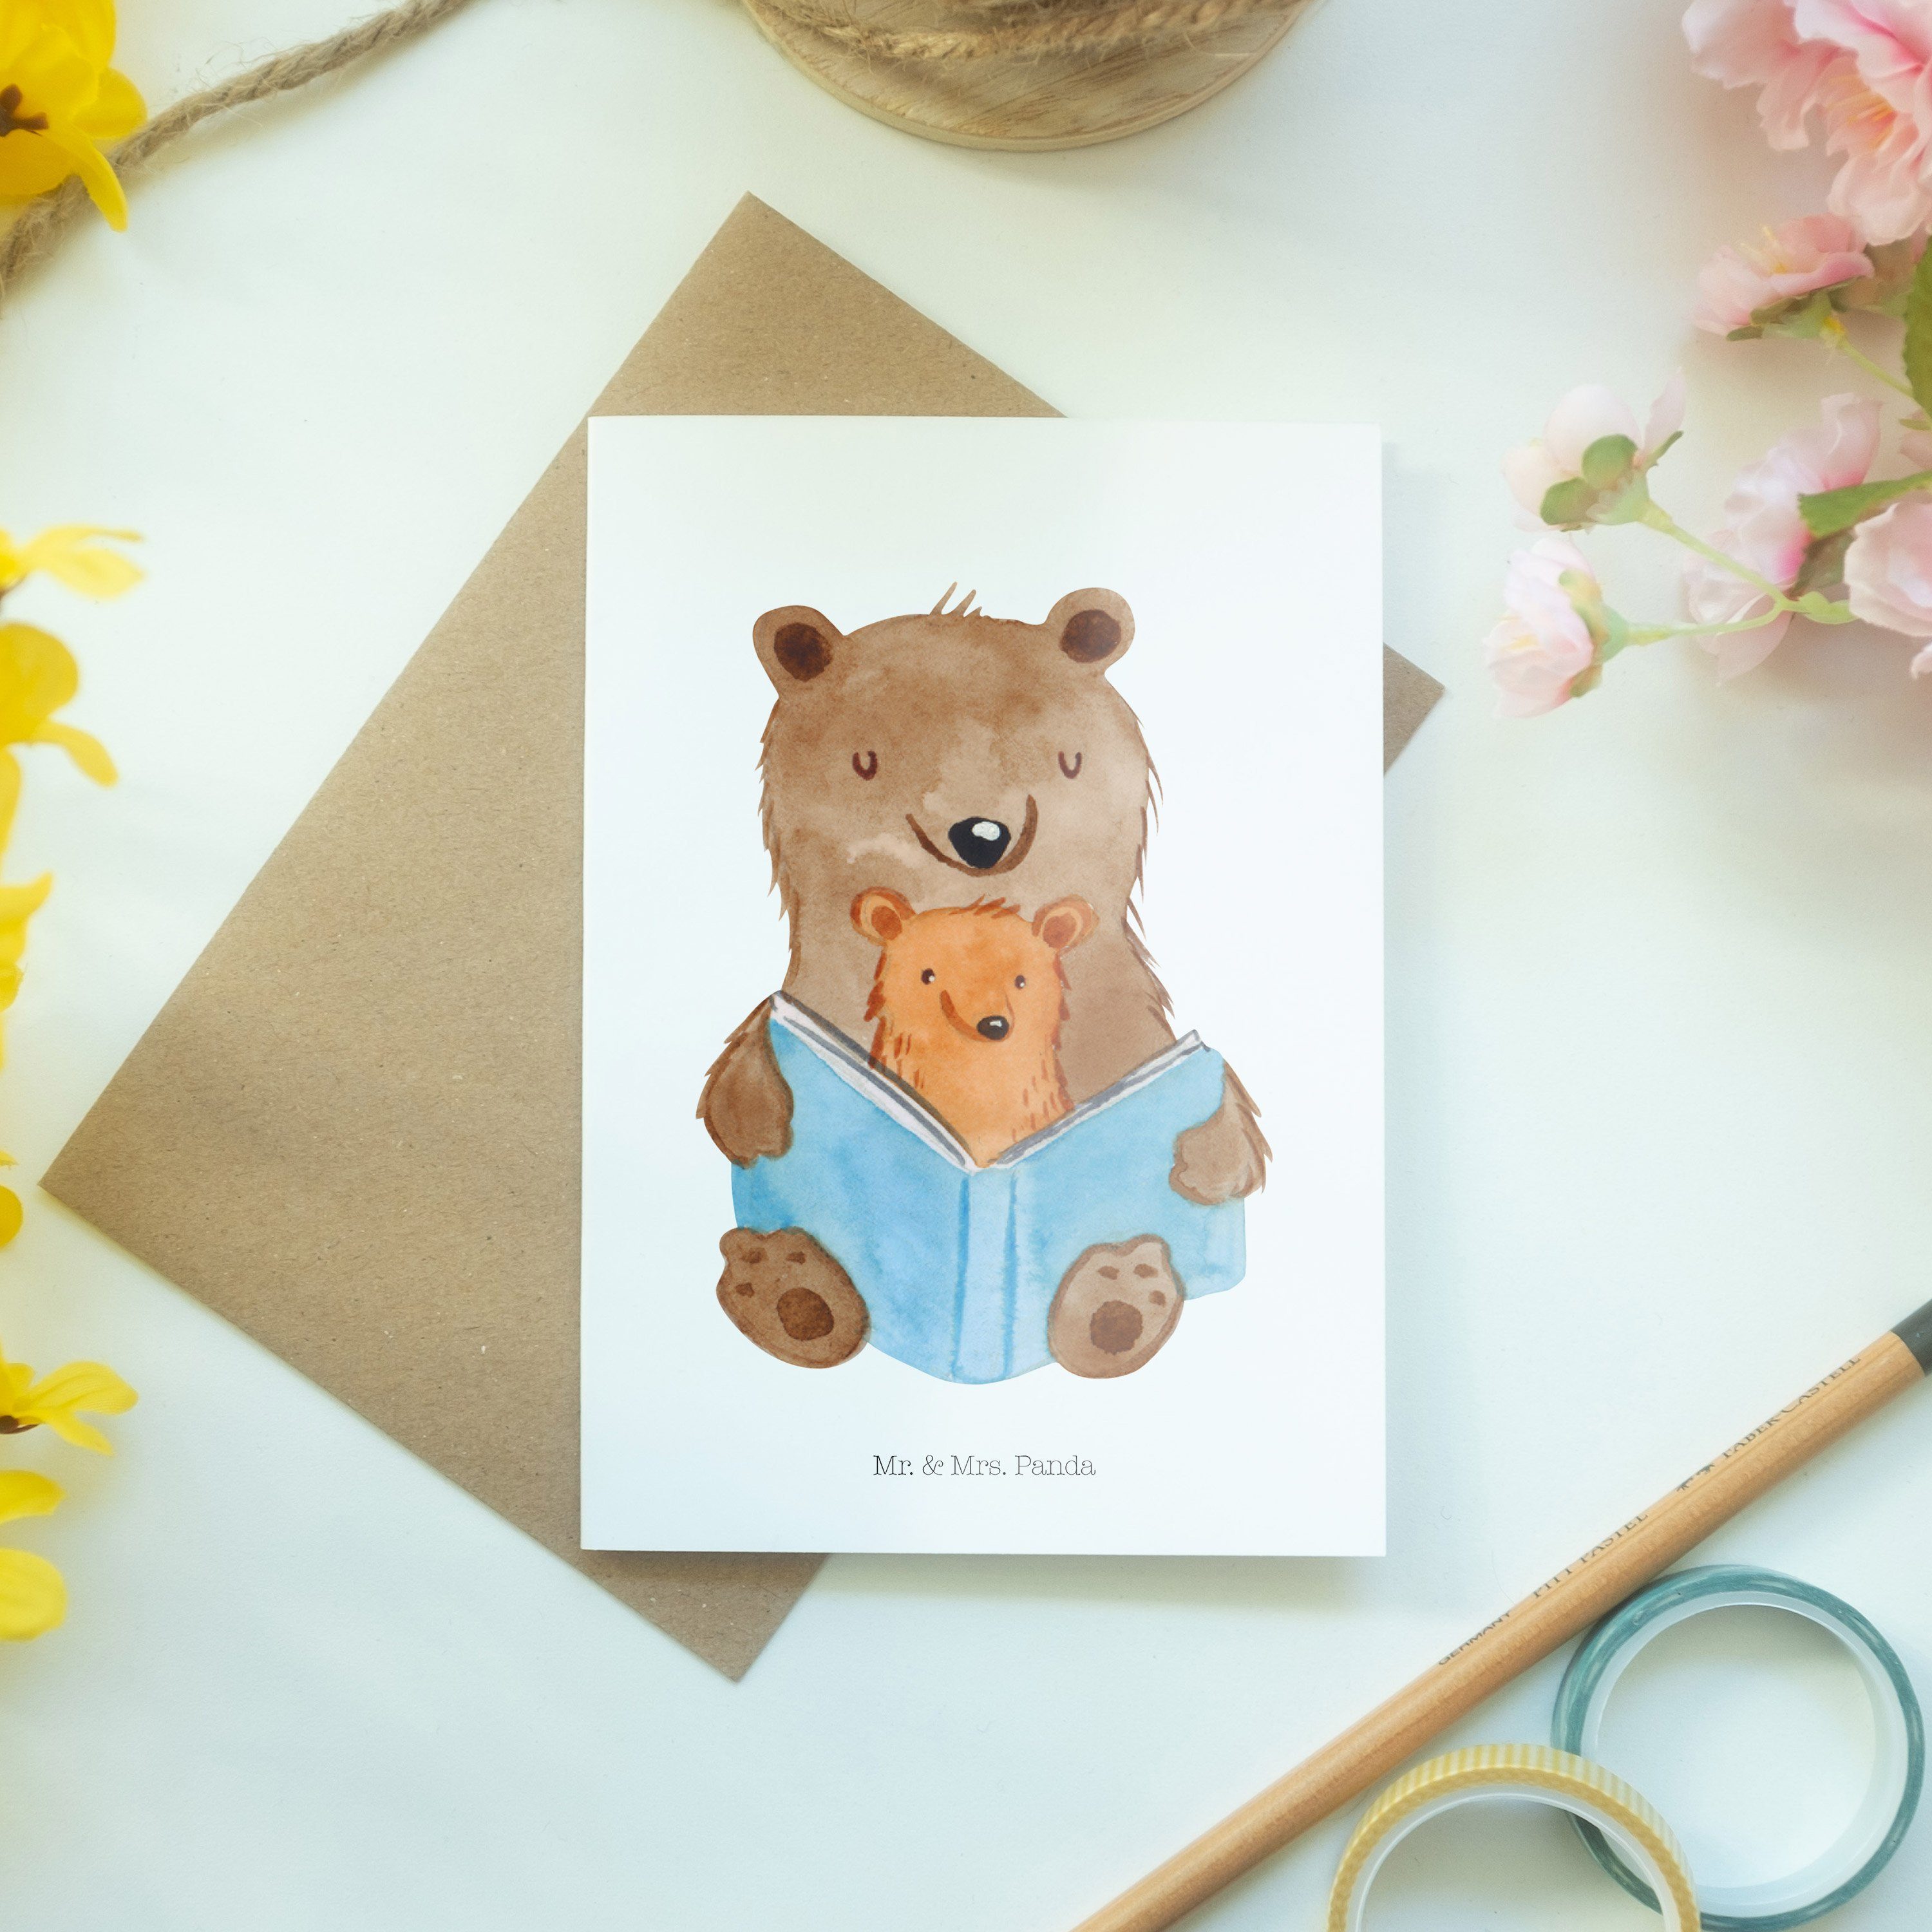 & Lieblingsoma, Oma, - Bären Hochzeitskart Panda Weiß Mr. - Buch Karte, Mrs. Grußkarte Geschenk,